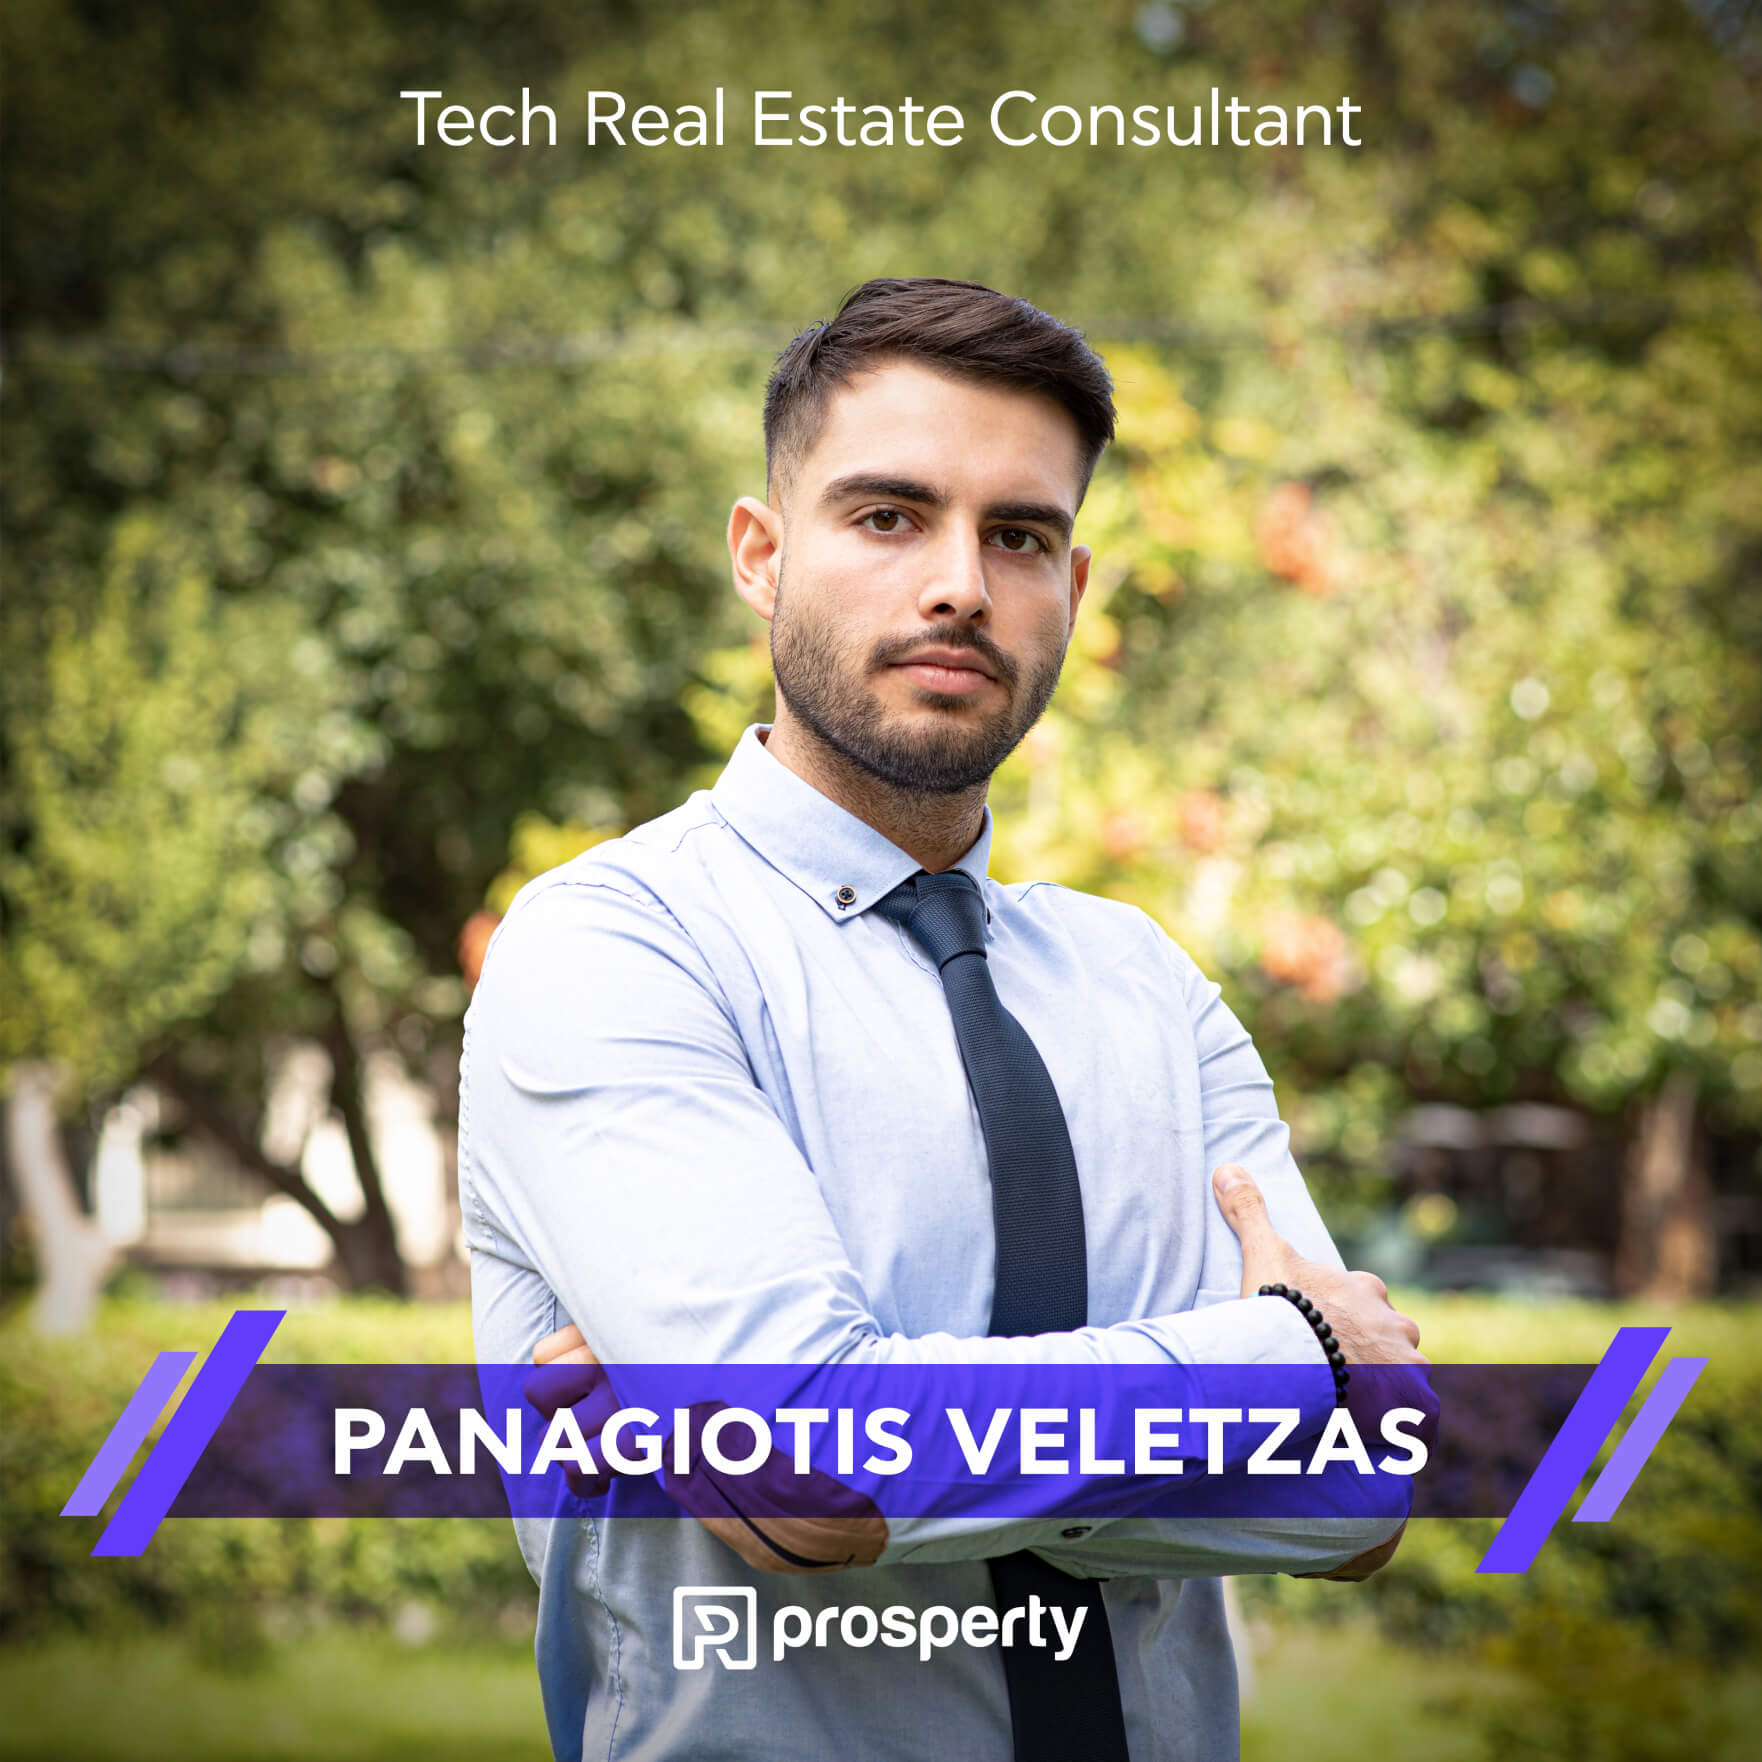 Panagiotis Veletzas | Tech Real Estate Consultant